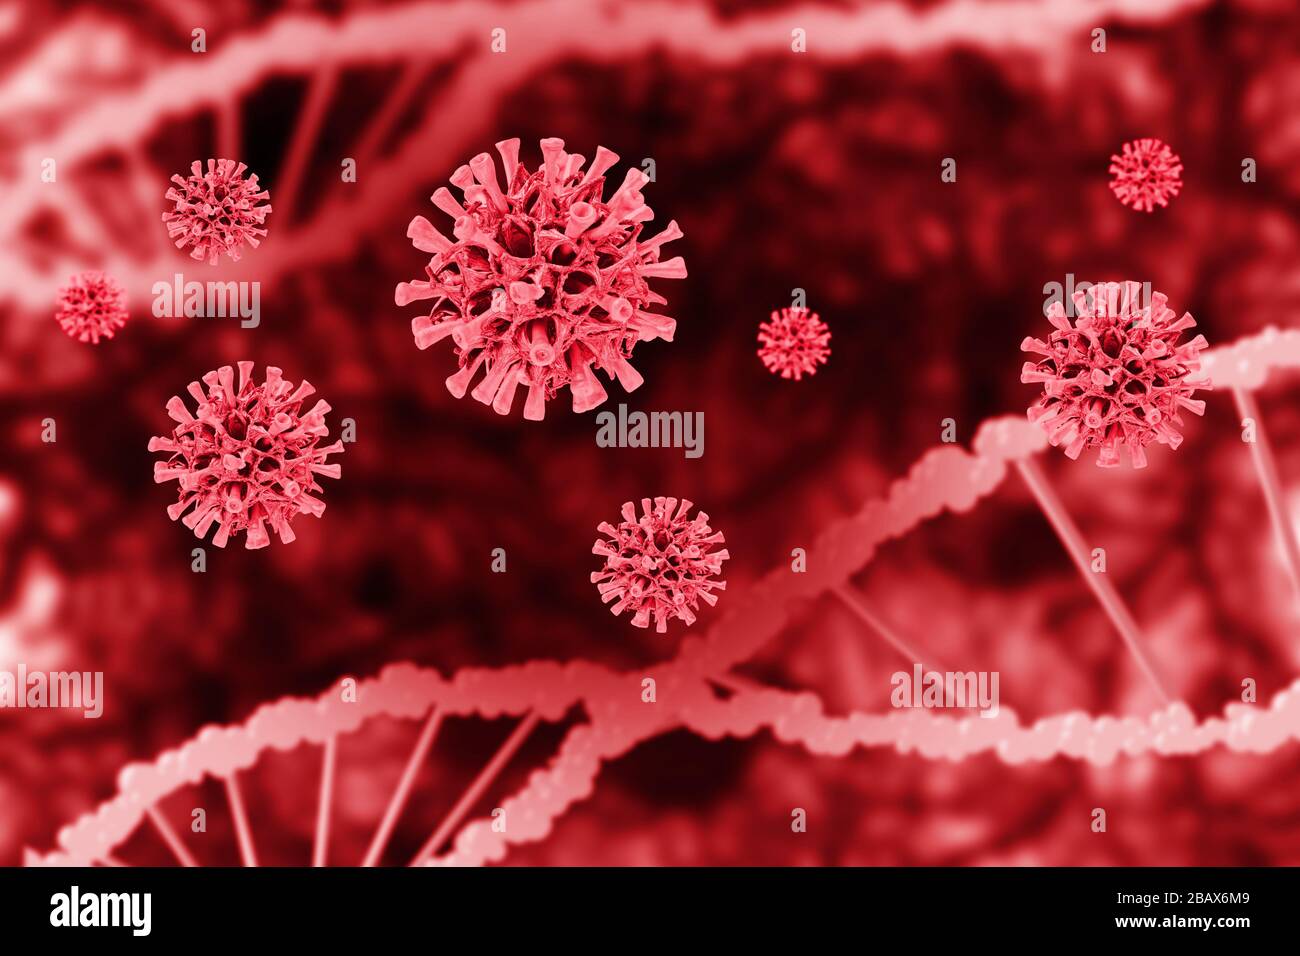 Coronaviruszellen verschwommen dna-Spiralhintergrund. Konzept der Virusgefährdung. Stockfoto